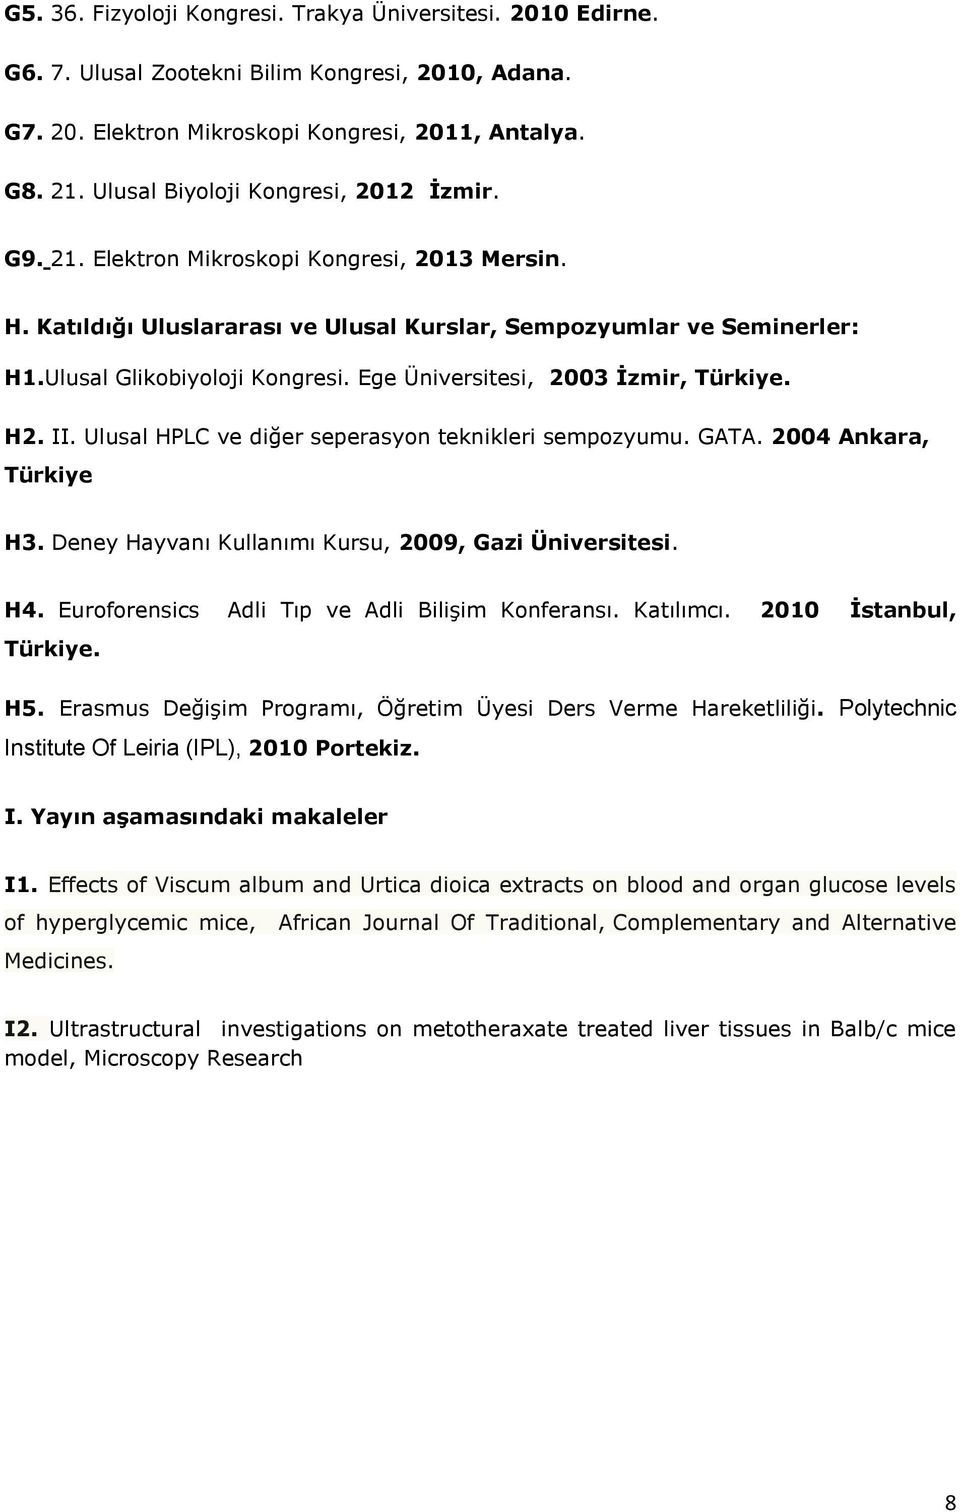 Ege Üniversitesi, 2003 İzmir, Türkiye. H2. II. Ulusal HPLC ve diğer seperasyon teknikleri sempozyumu. GATA. 2004 Ankara, Türkiye H3. Deney Hayvanı Kullanımı Kursu, 2009, Gazi Üniversitesi. H4.